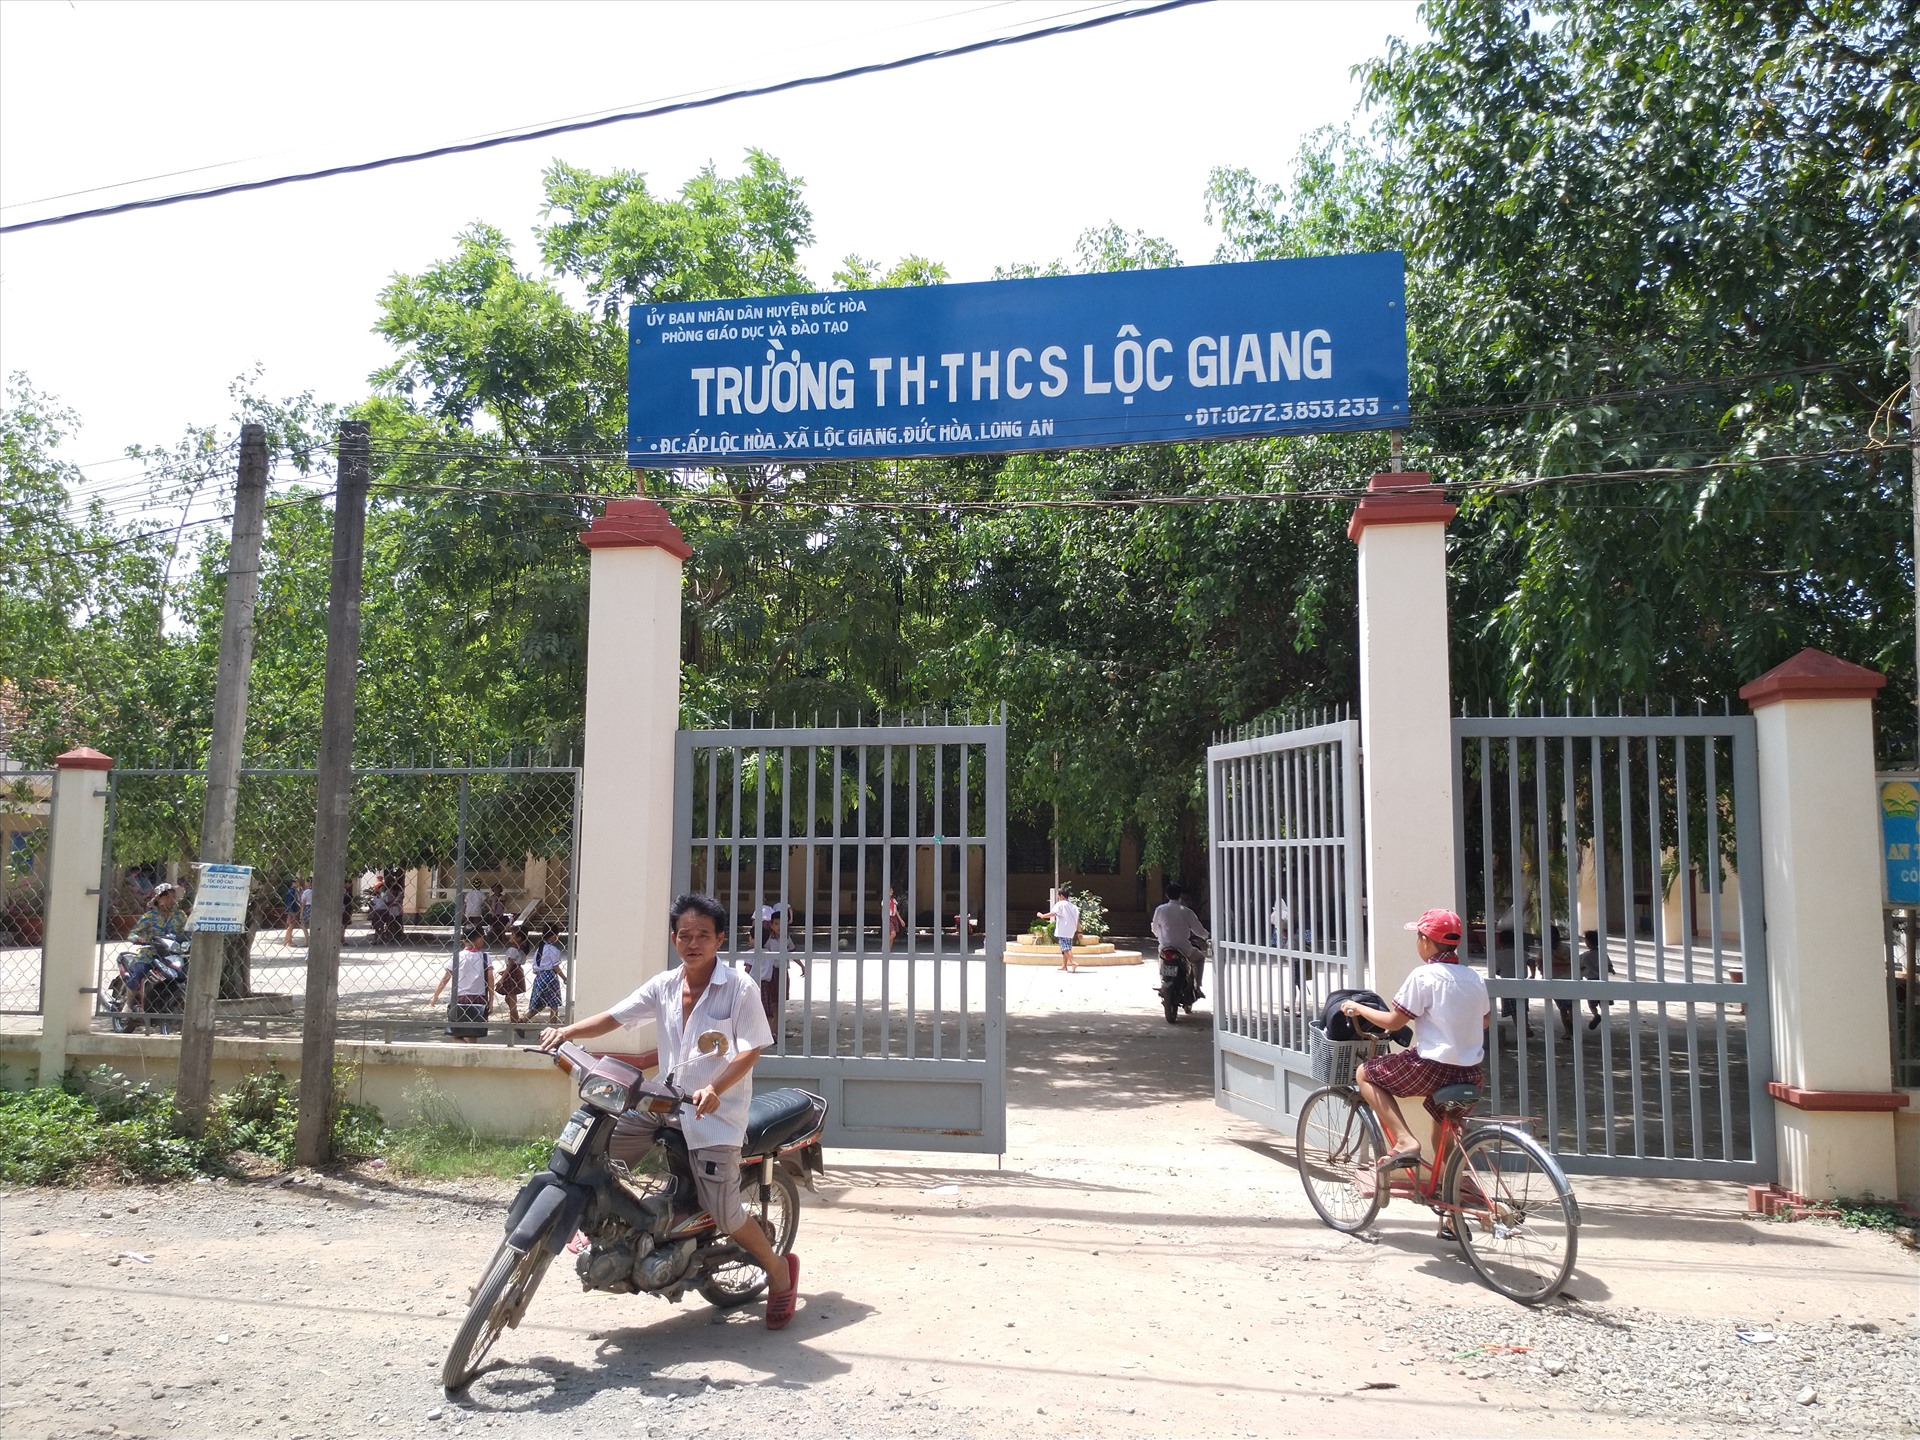 Trường TH-THCS Lộc Giang (điểm trường Lộc Hòa), nơi xảy ra vụ bố học sinh đánh cô giáo ngày 19.5. Ảnh: K.Q